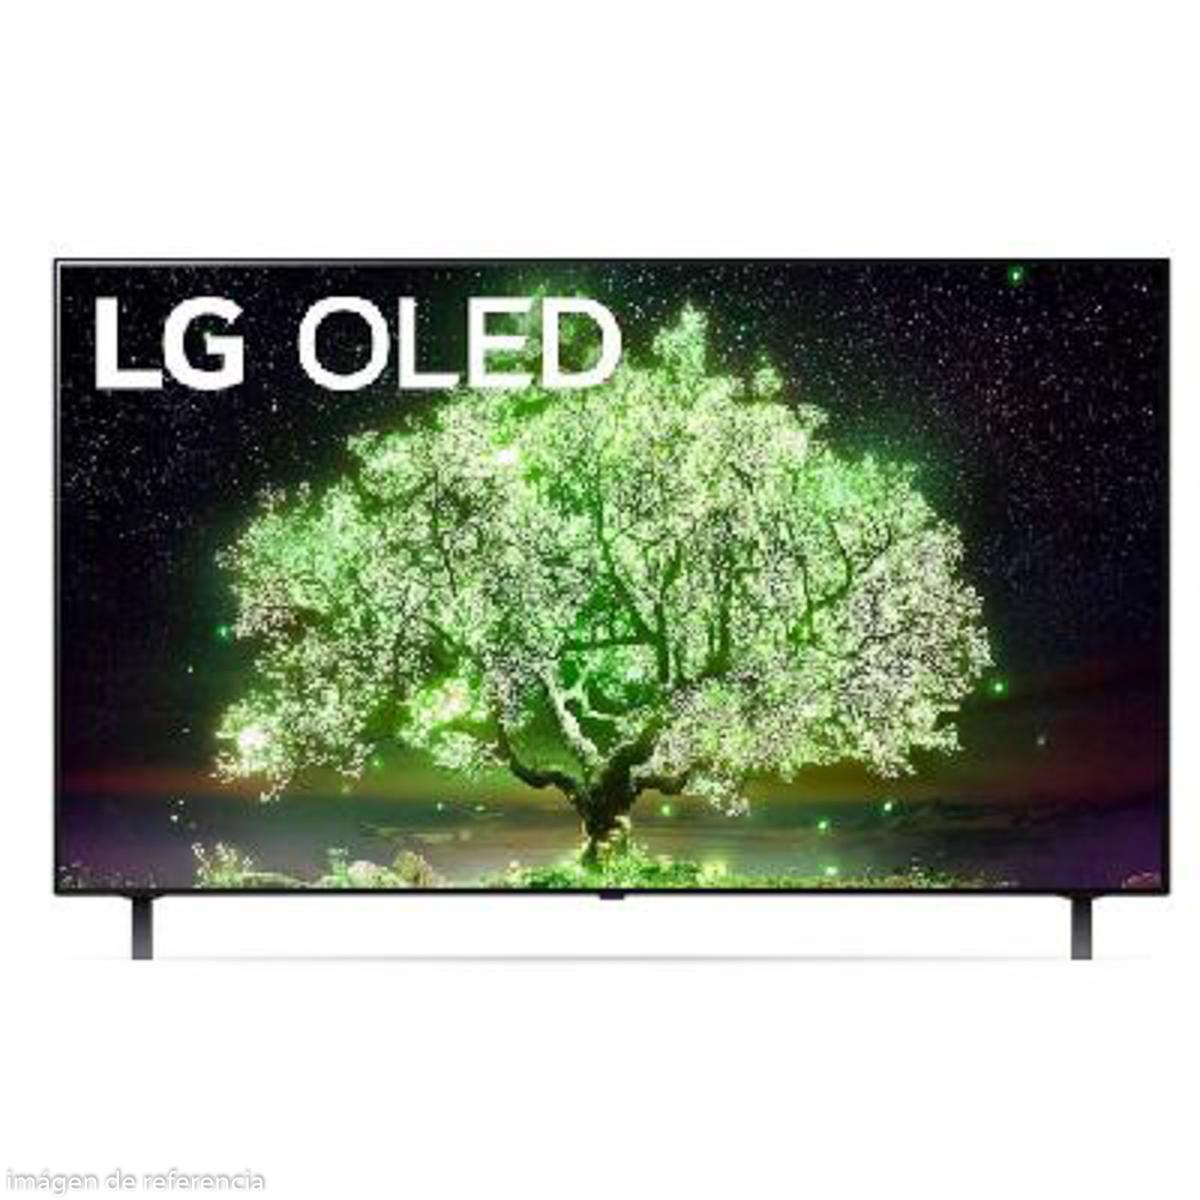 TV LG OLED 65" SMART AI THINQ 4K